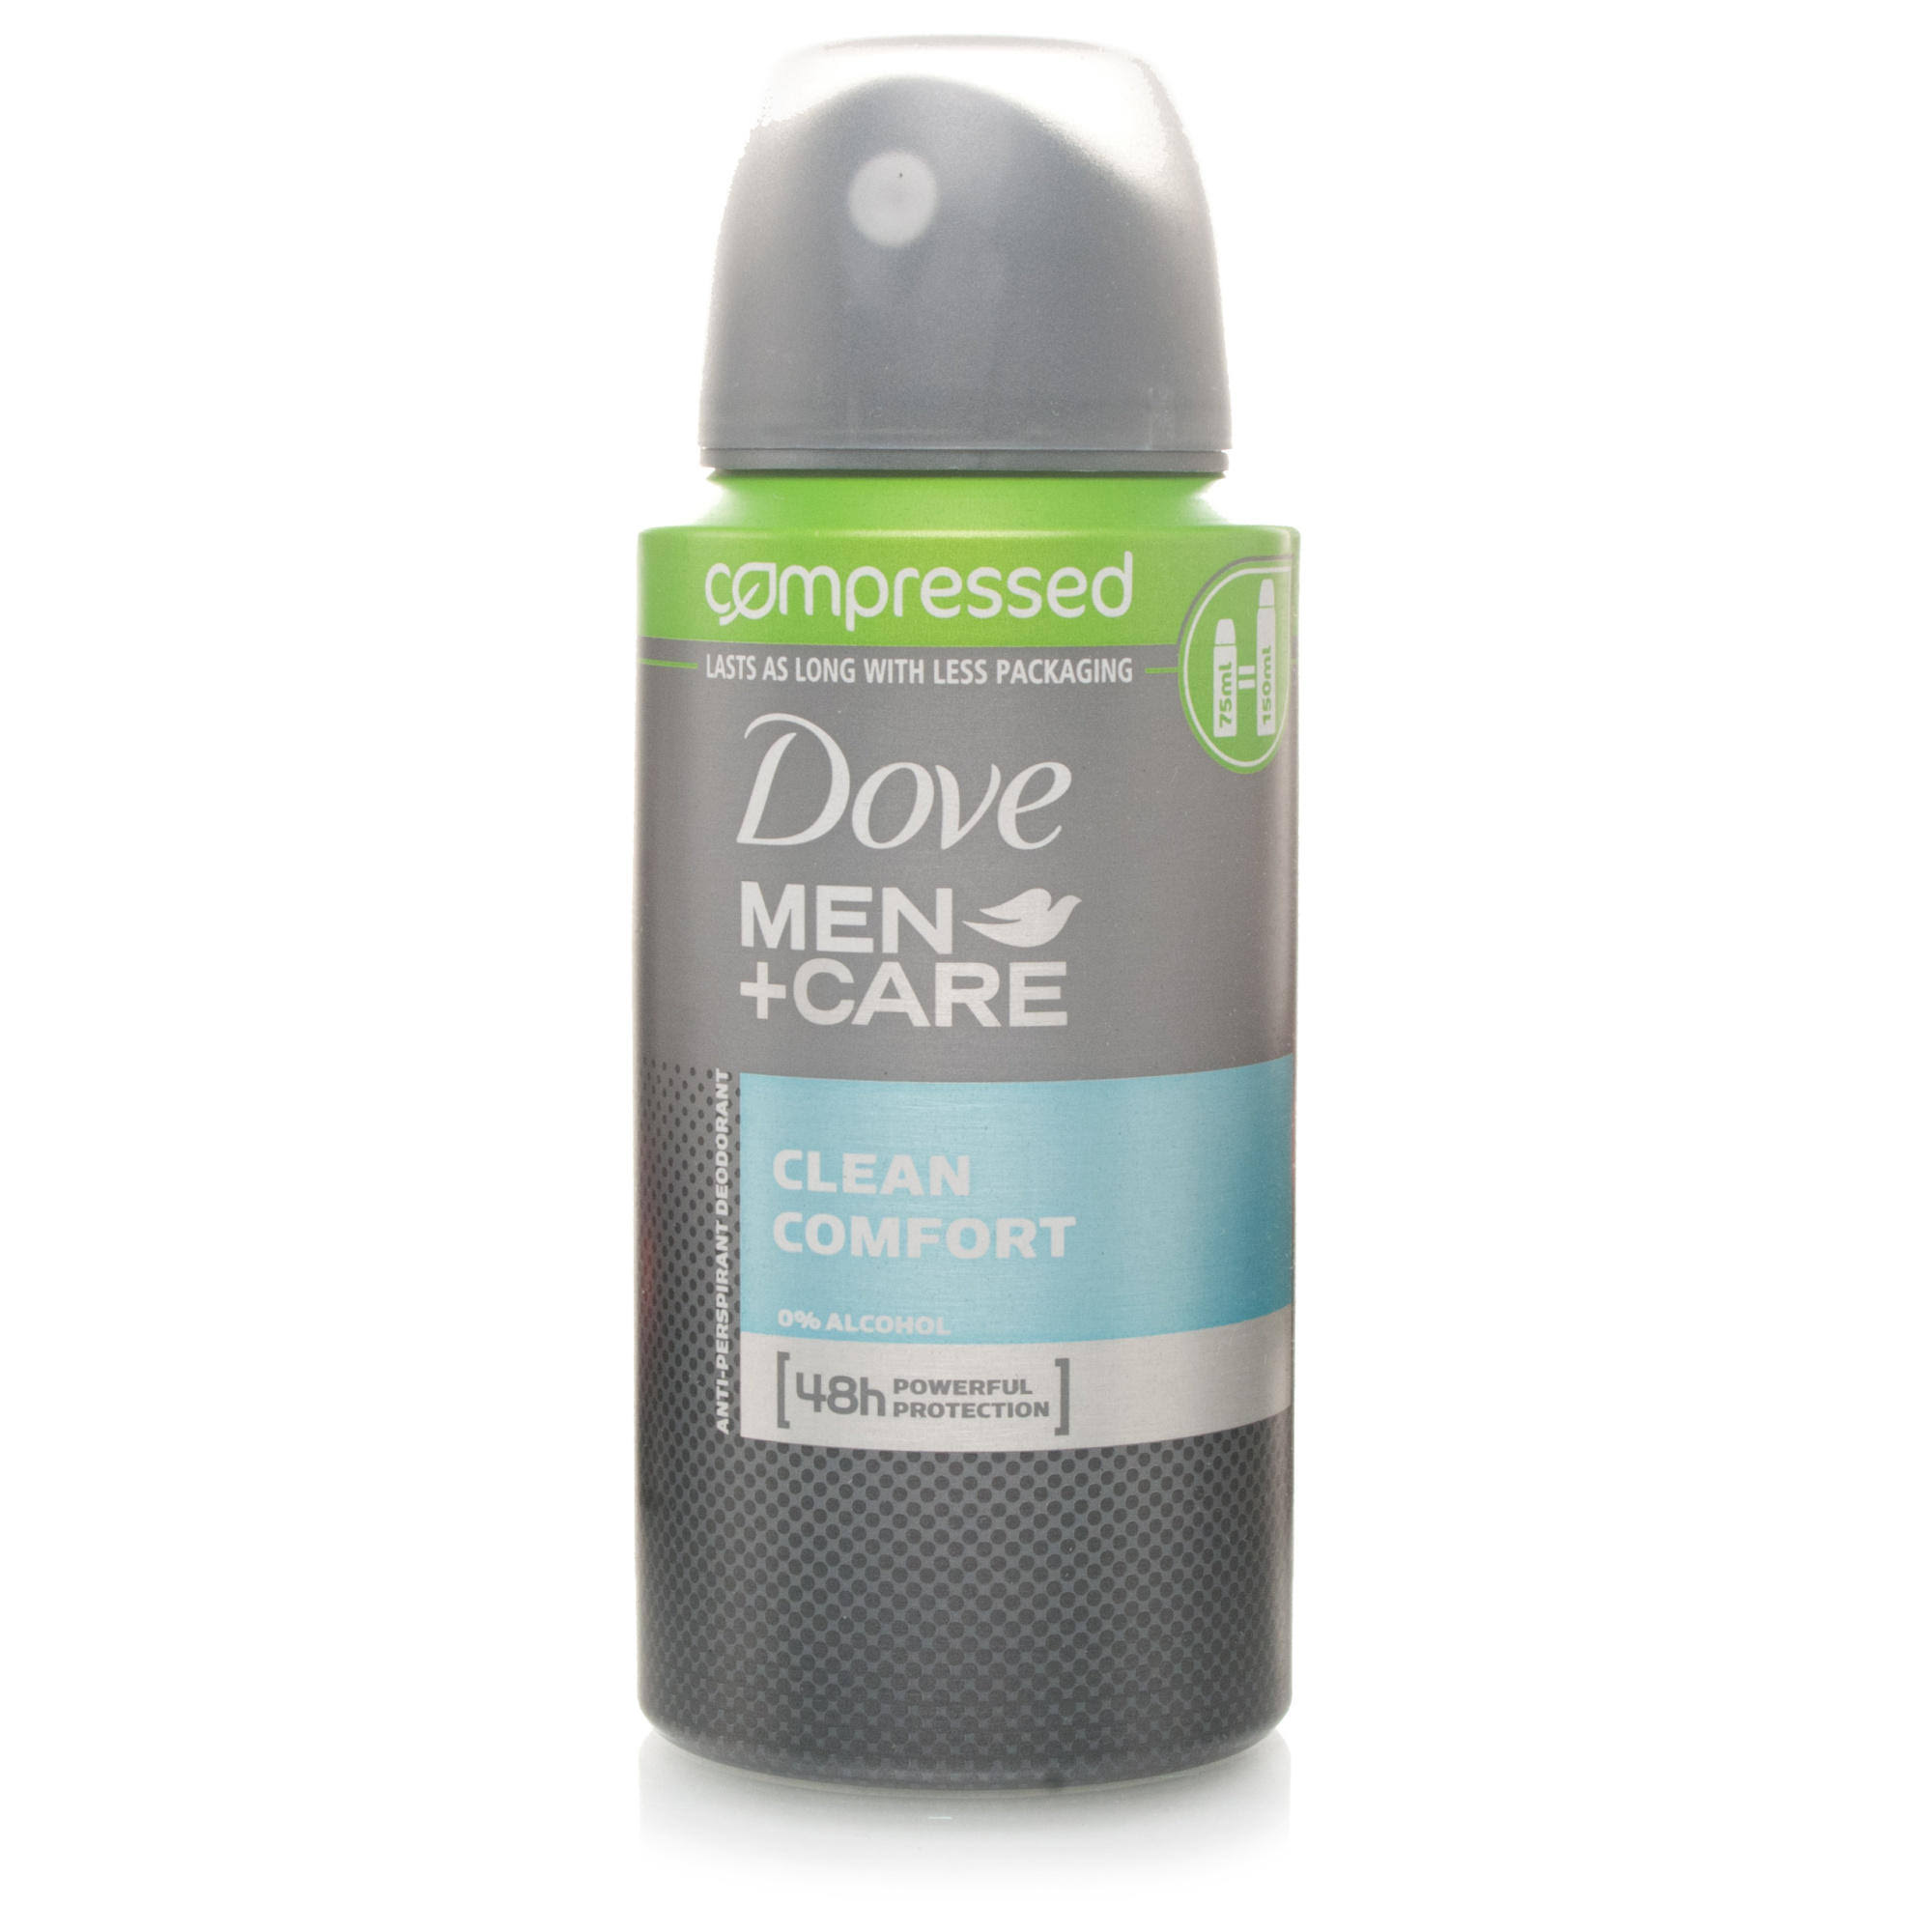 Dove Men+Care Compressed Deodorant - Clean Comfort, 75ml